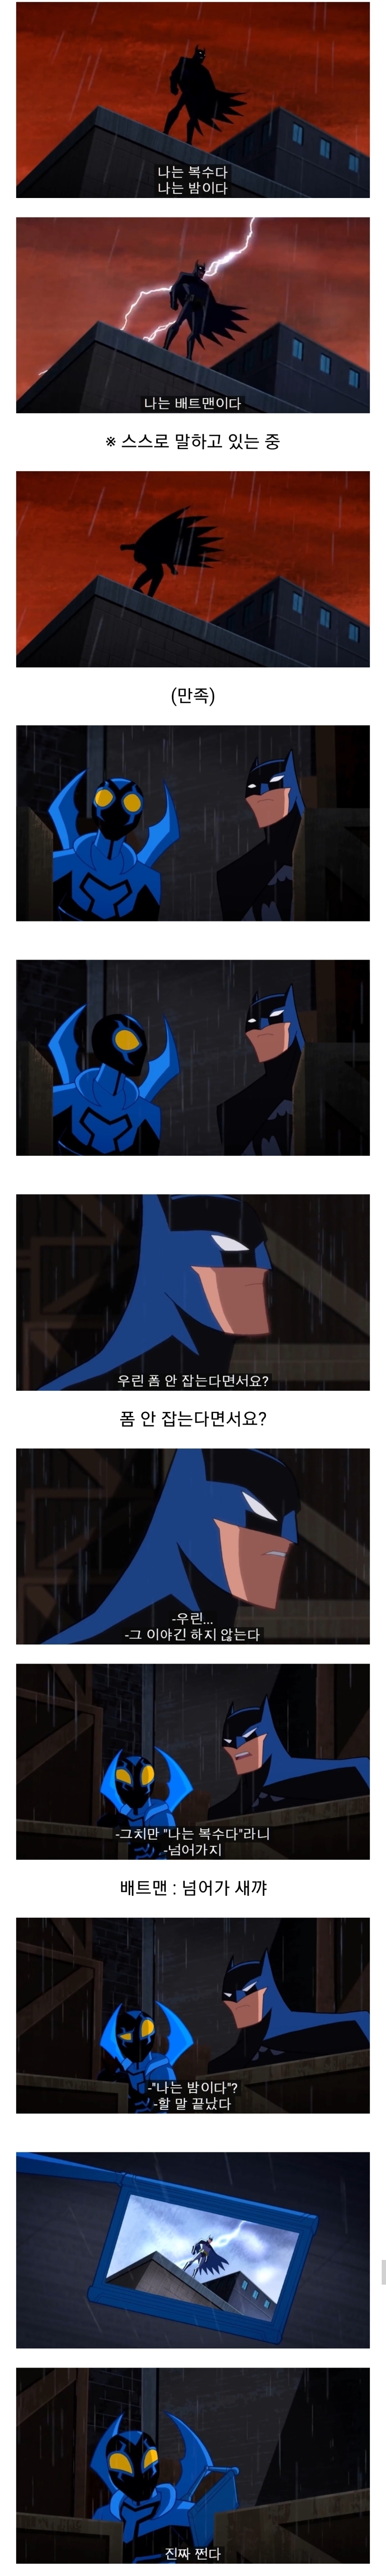 흑역사 공개중인 배트맨 - 꾸르